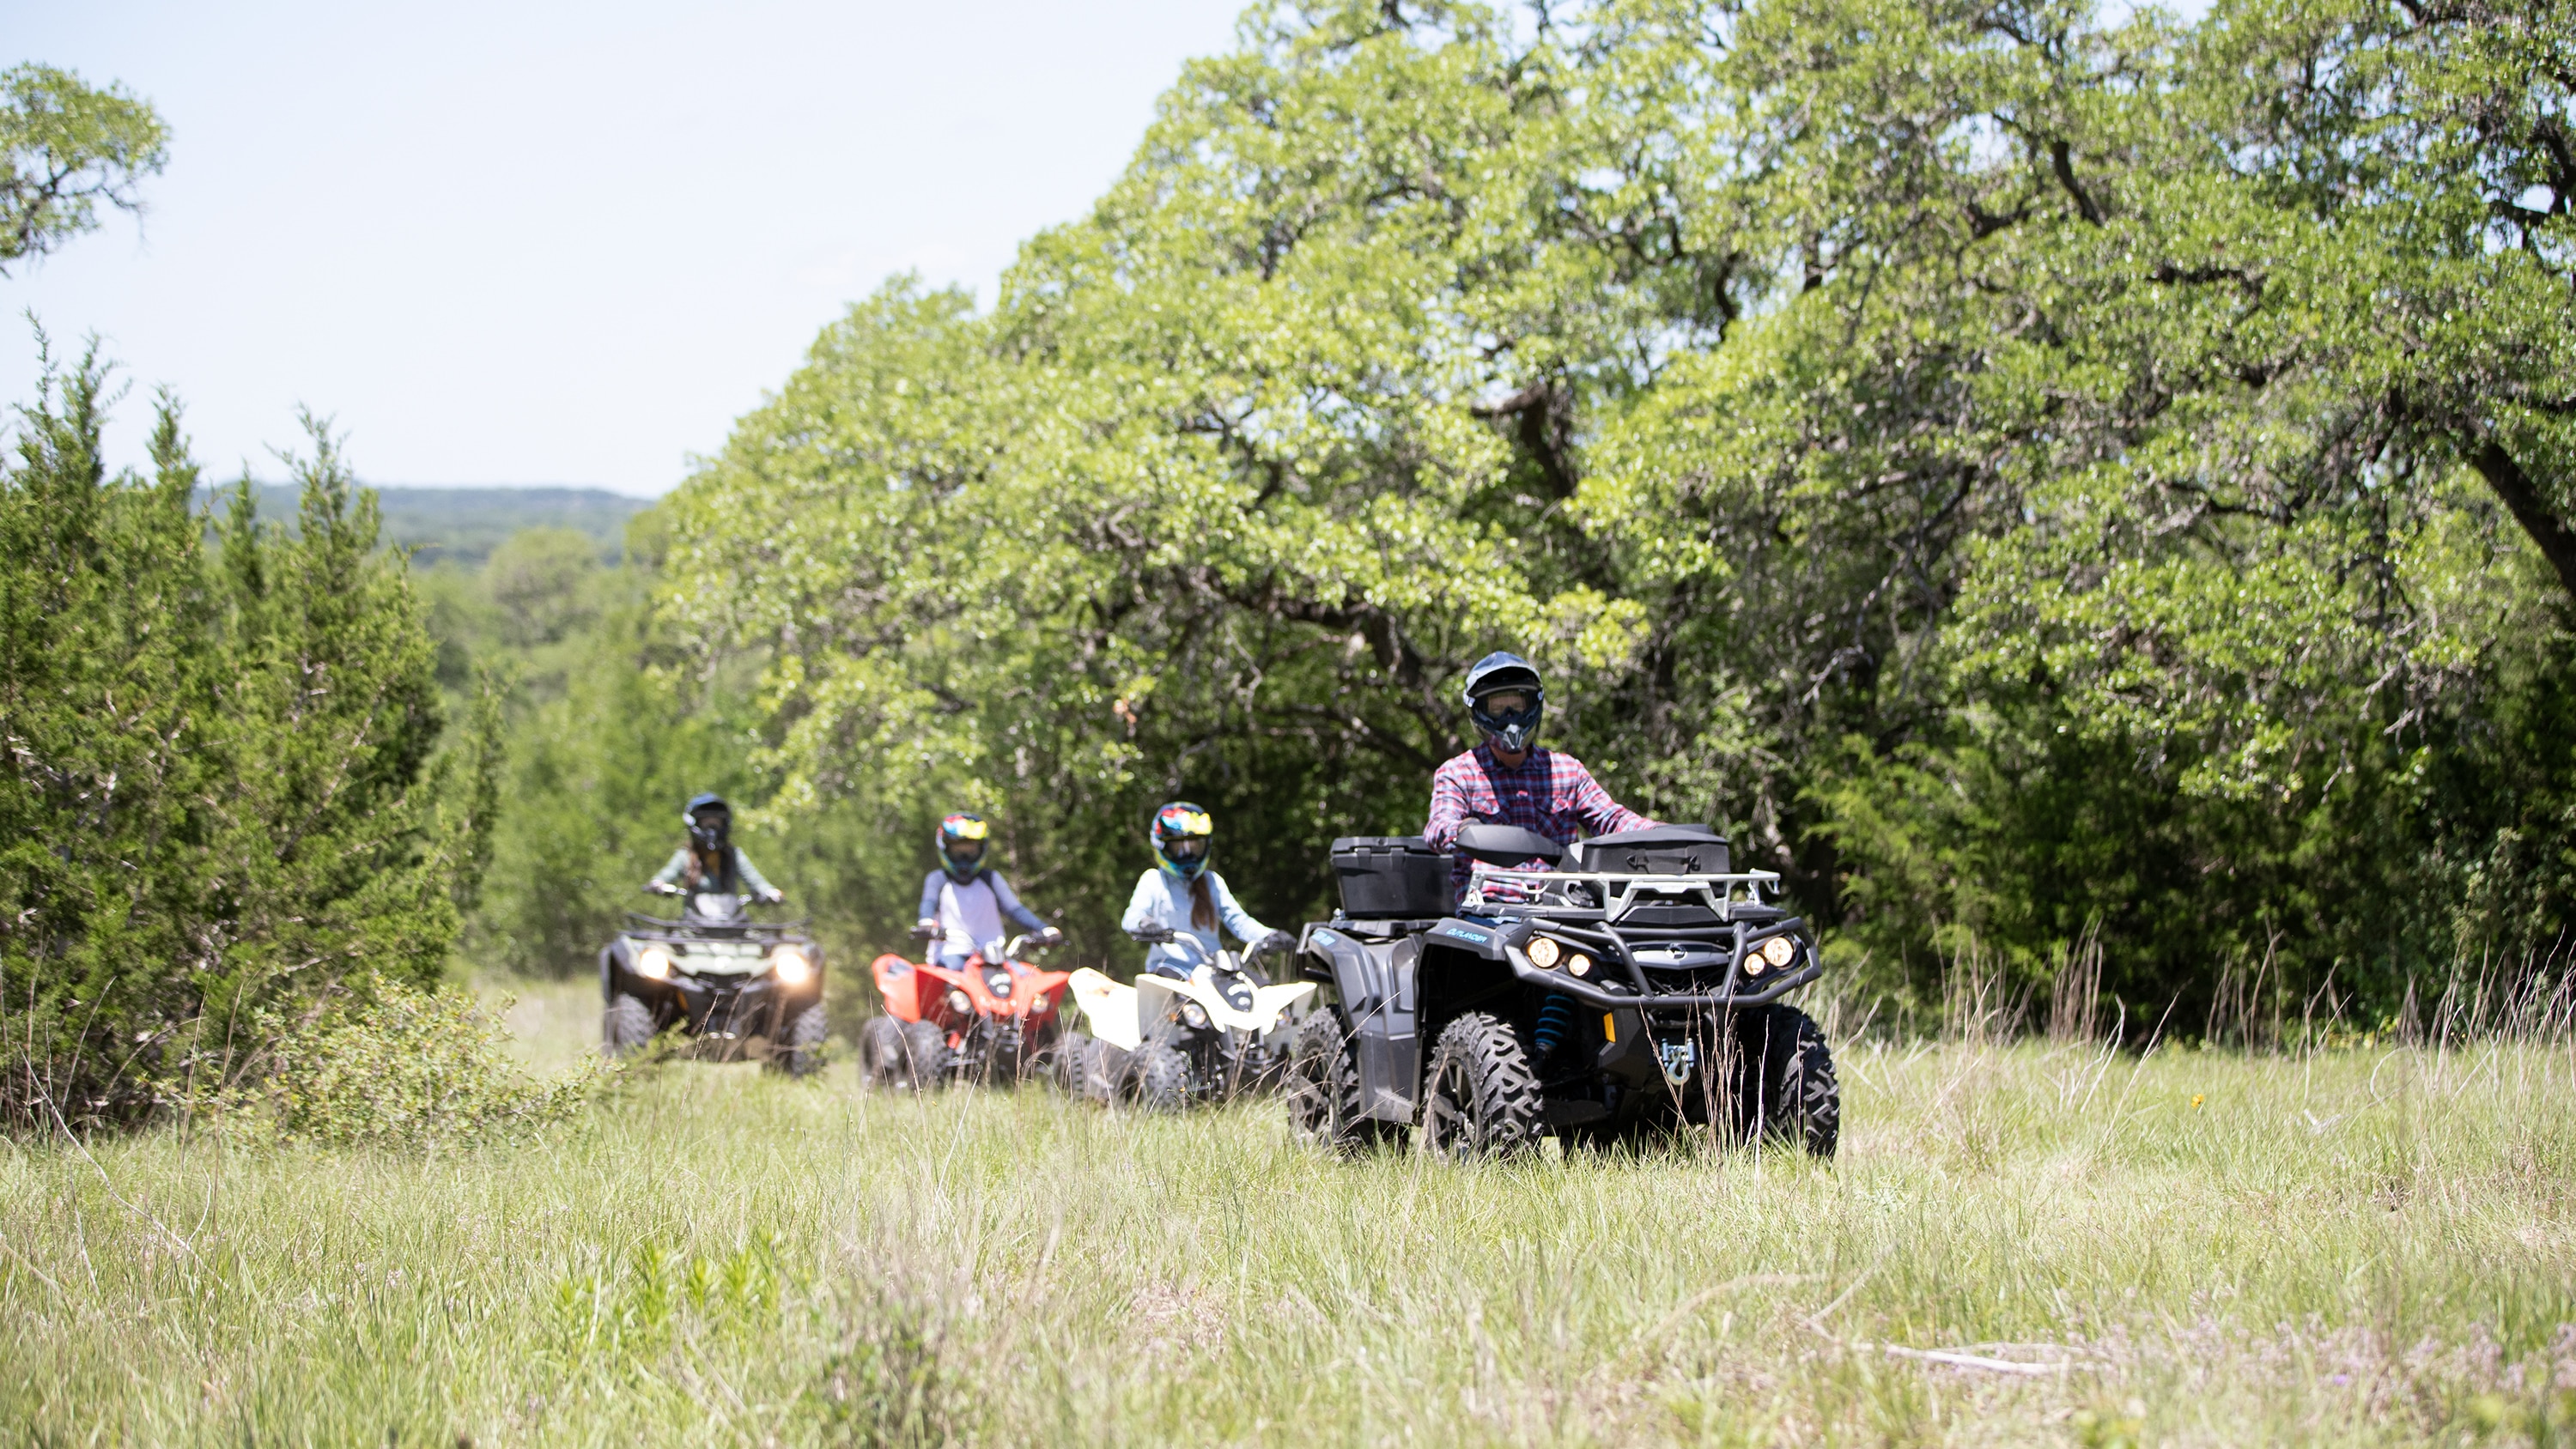  Porodica koja vozi svoj ATV u šumi